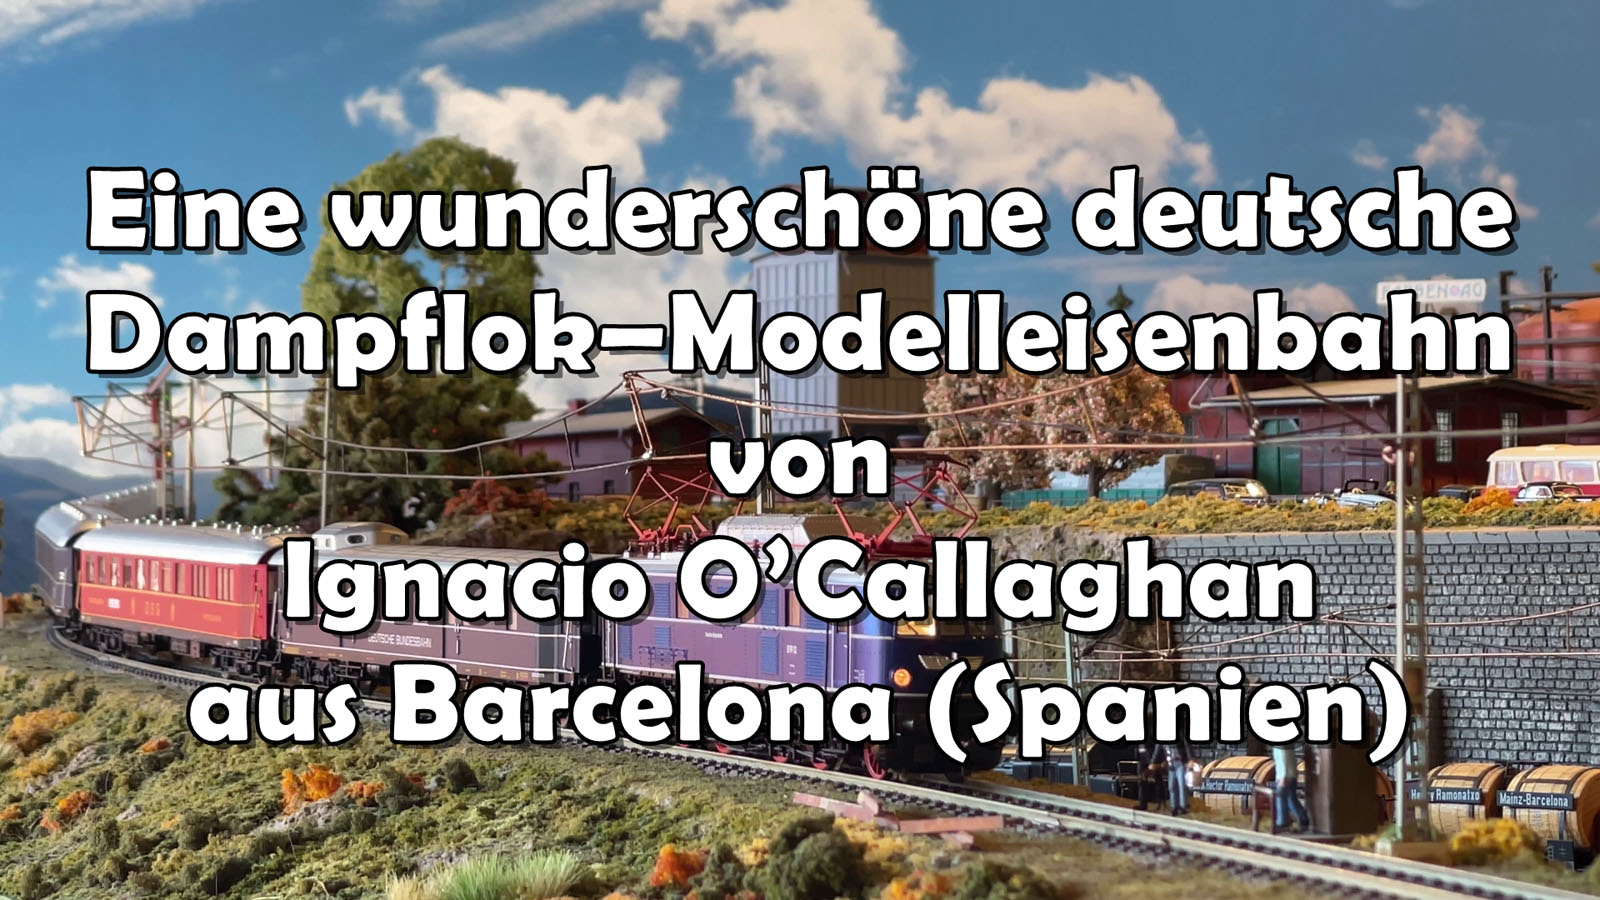 Eine wunderschöne deutsche Dampflok – Modelleisenbahn aus Barcelona (H0 Modellbahn)